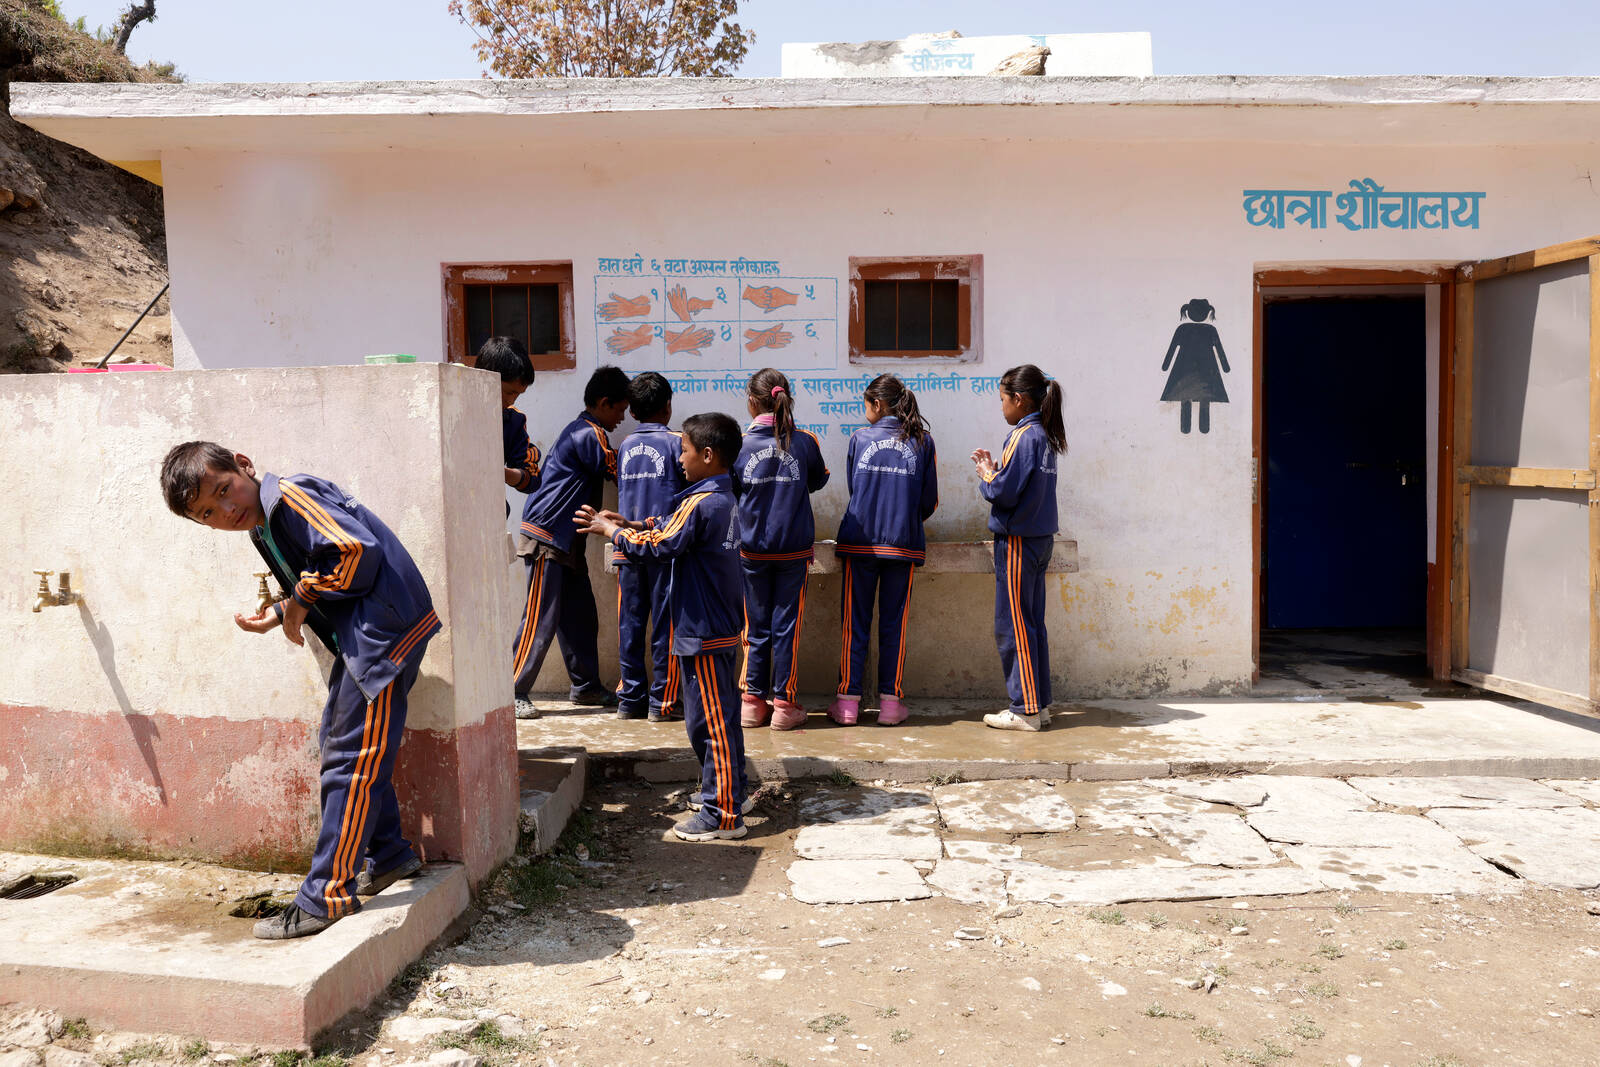 Ryhmä koululaisia pesee käsiään wc-rakennuksen edessä Nepalissa.